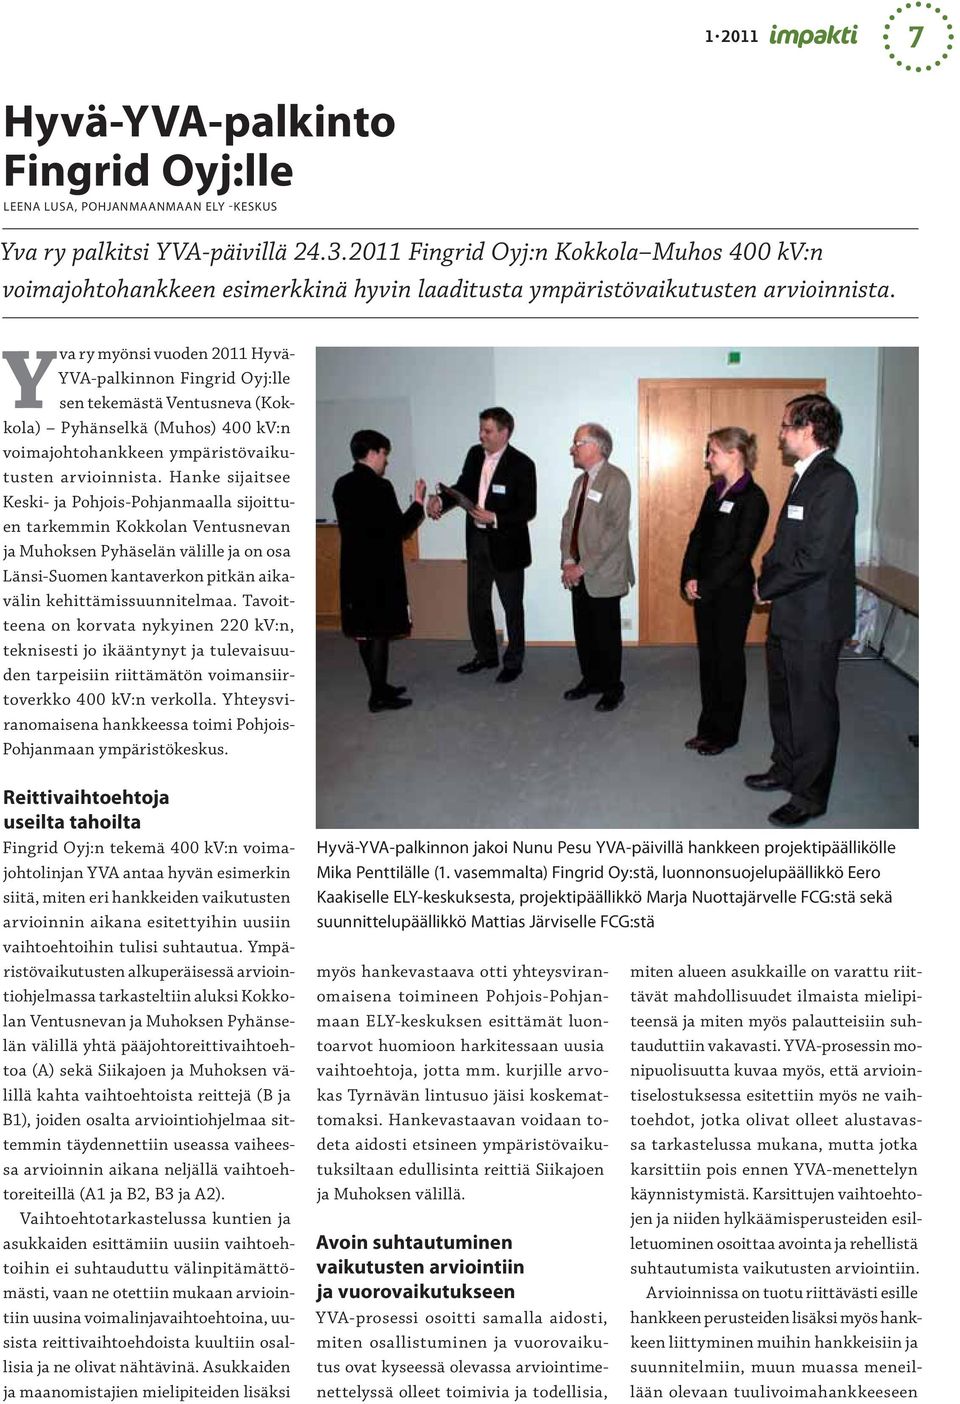 Yva ry myönsi vuoden 2011 Hyvä- YVA-palkinnon Fingrid Oyj:lle sen tekemästä Ventusneva (Kokkola) Pyhänselkä (Muhos) 400 kv:n voimajohtohankkeen ympäristövaikutusten arvioinnista.